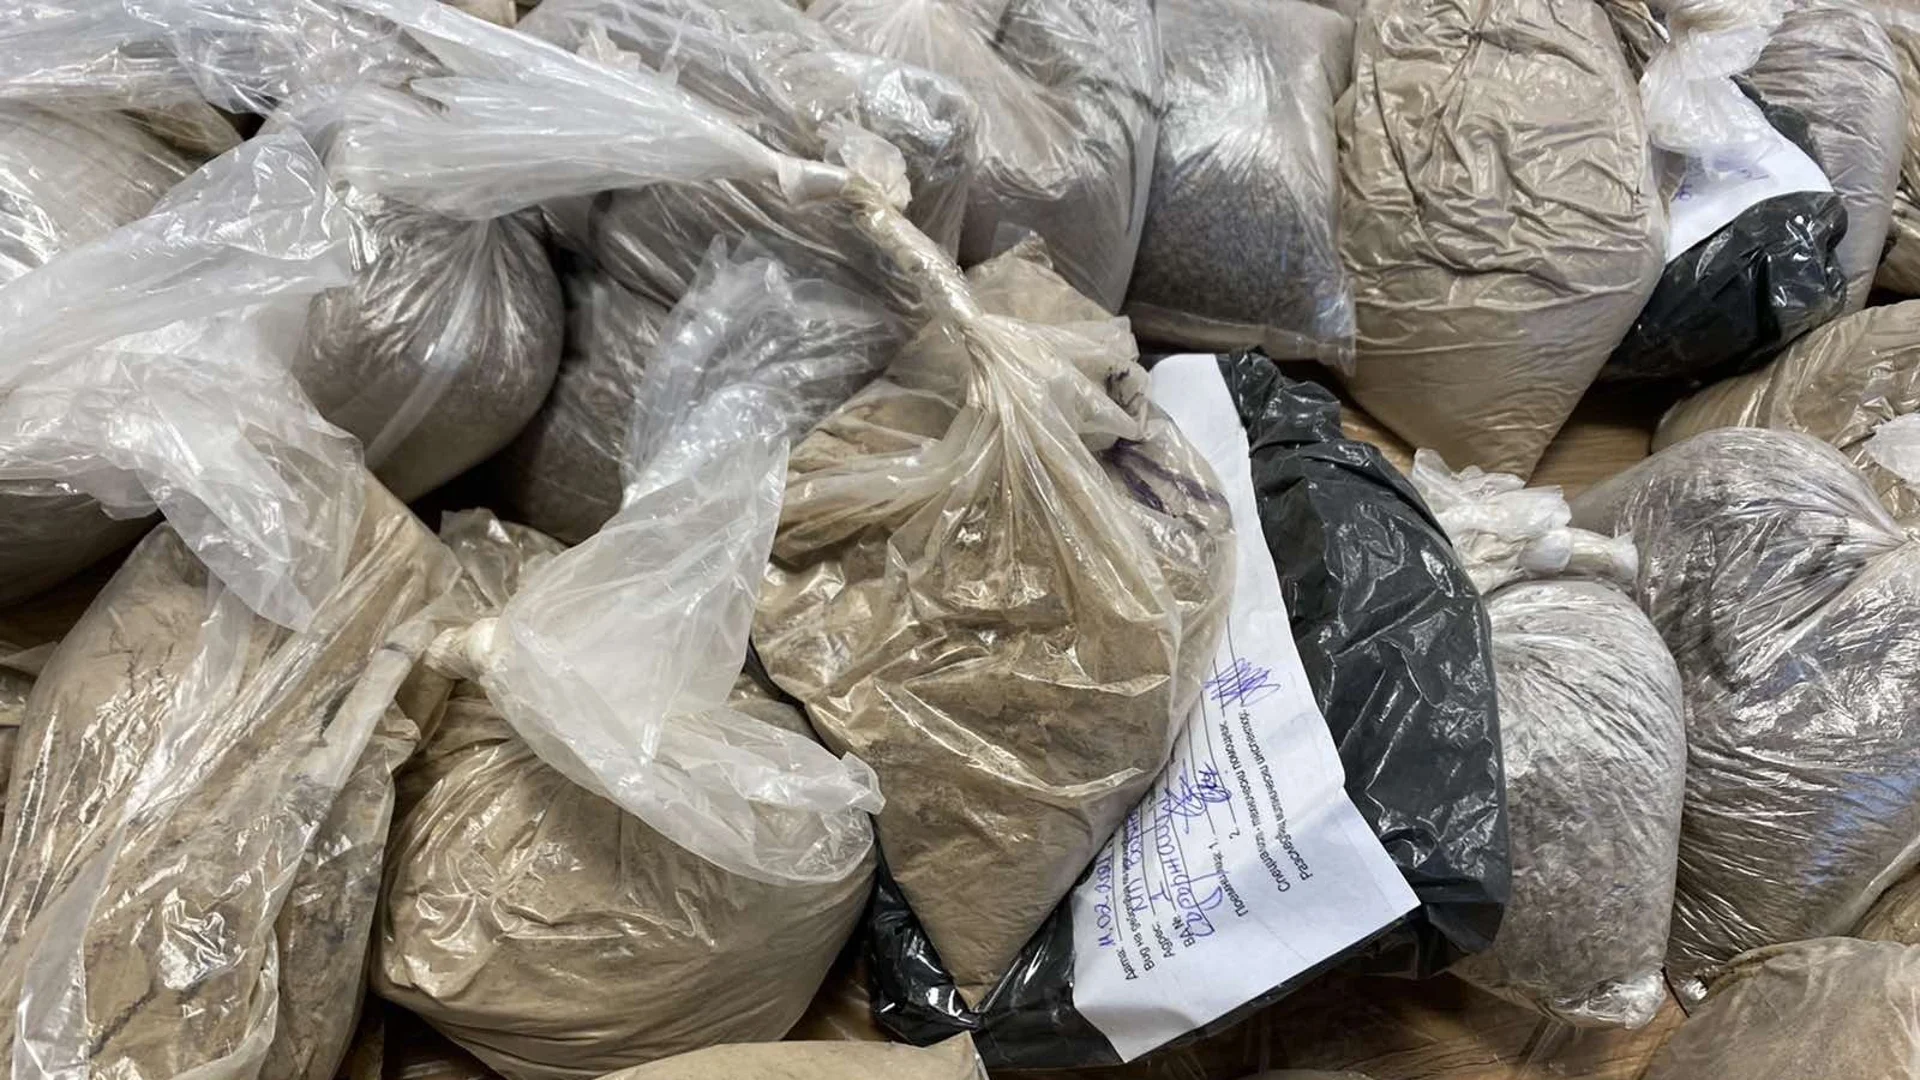 Откриха 12 кг хероин, скрити в пожарогасители